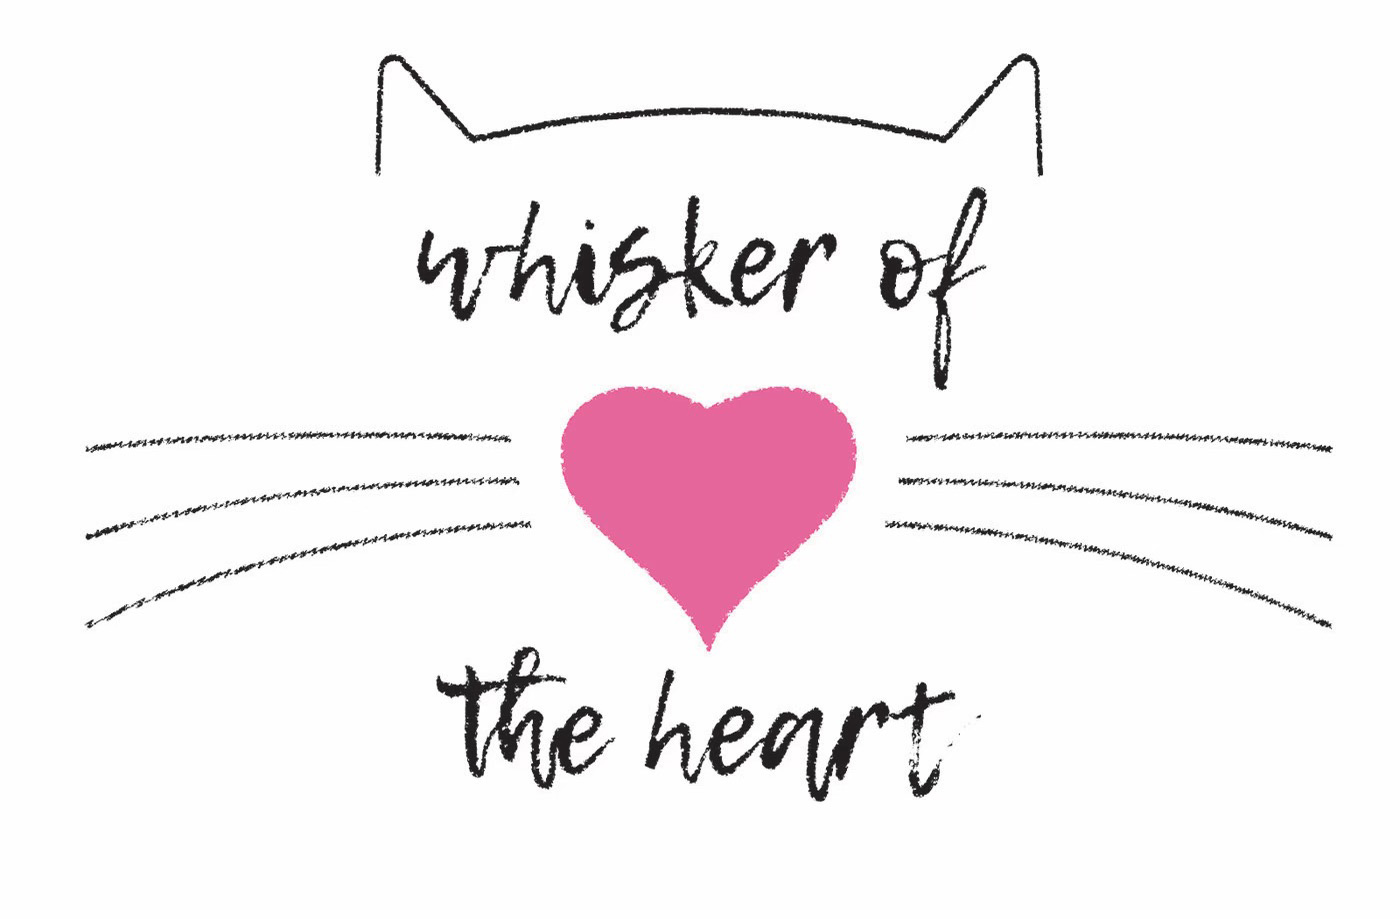 Whisker of the heart